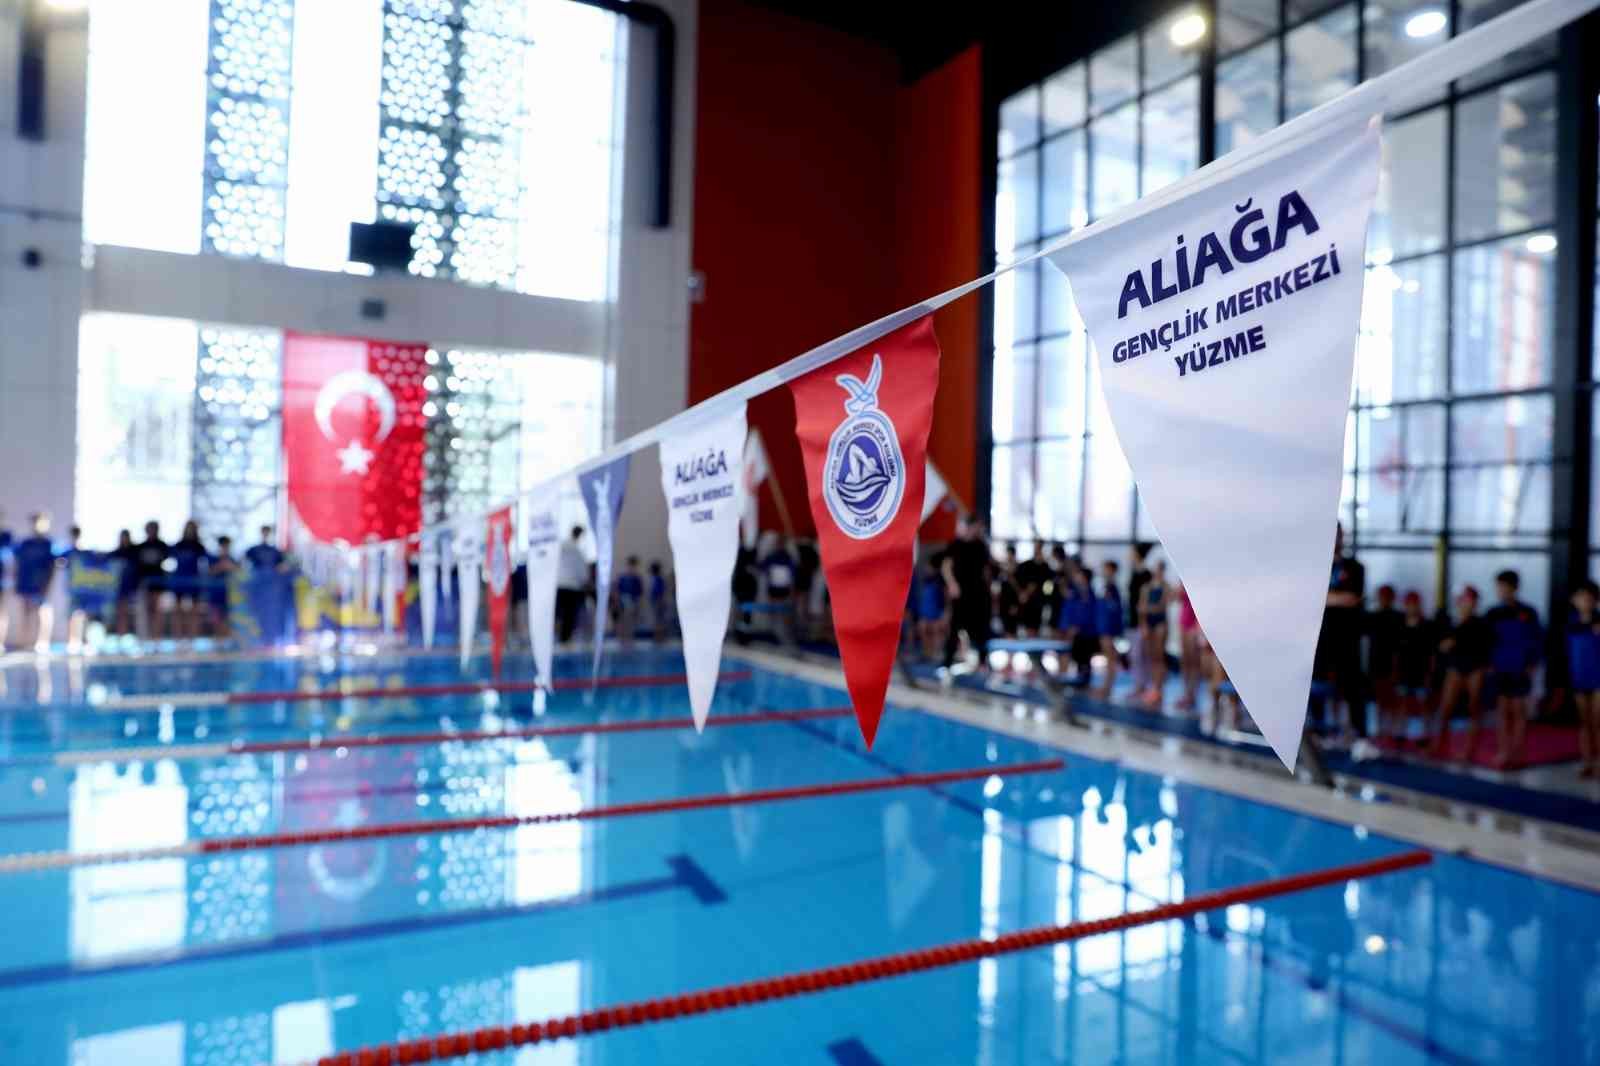 İzmir’in minik yüzücüleri Aliağa’da yarıştı